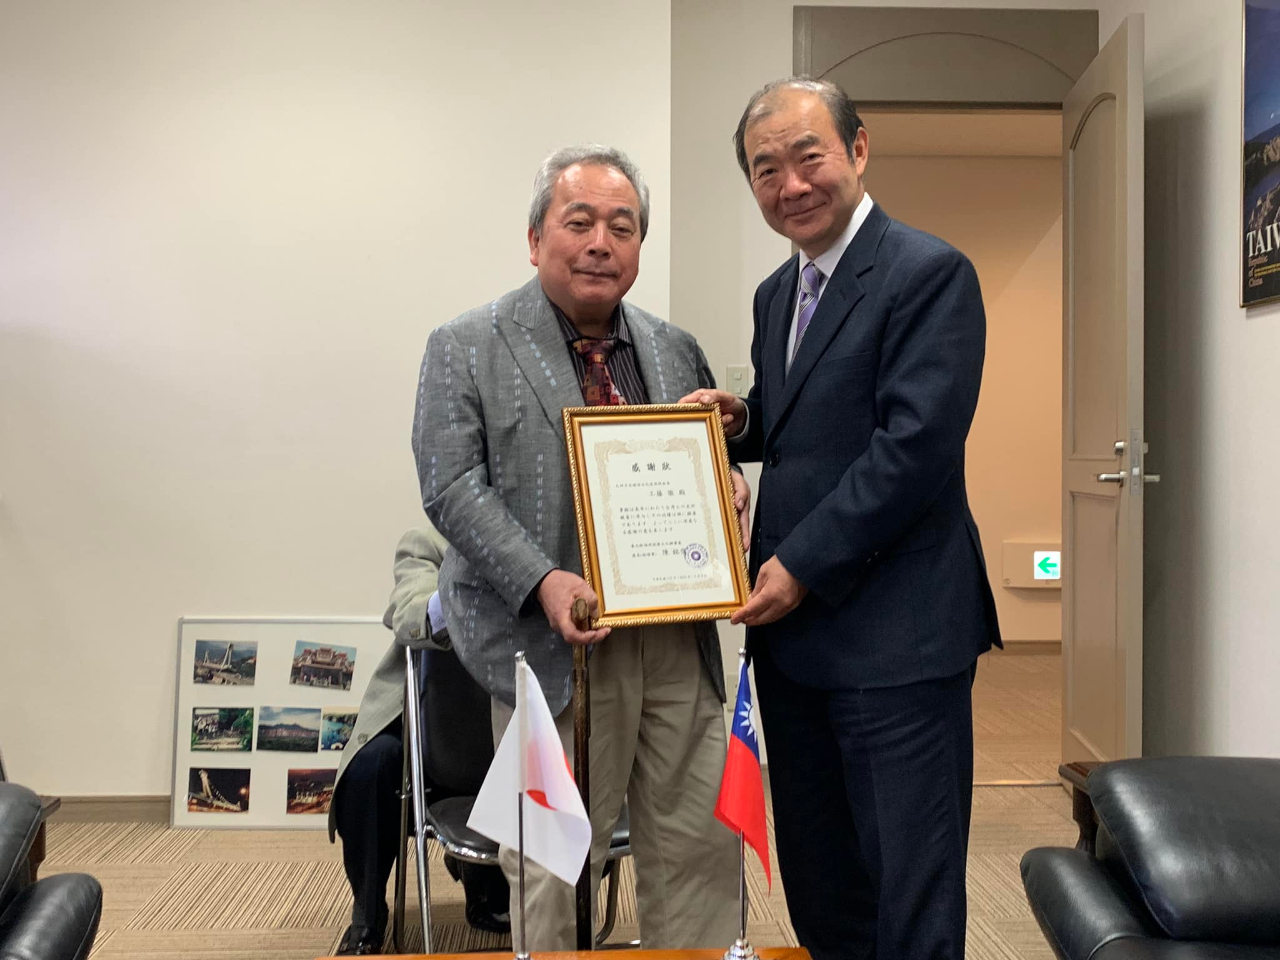 処長陳銘俊4月11日九州日台経済文化交流会工藤徹会長に感謝状を贈りました。